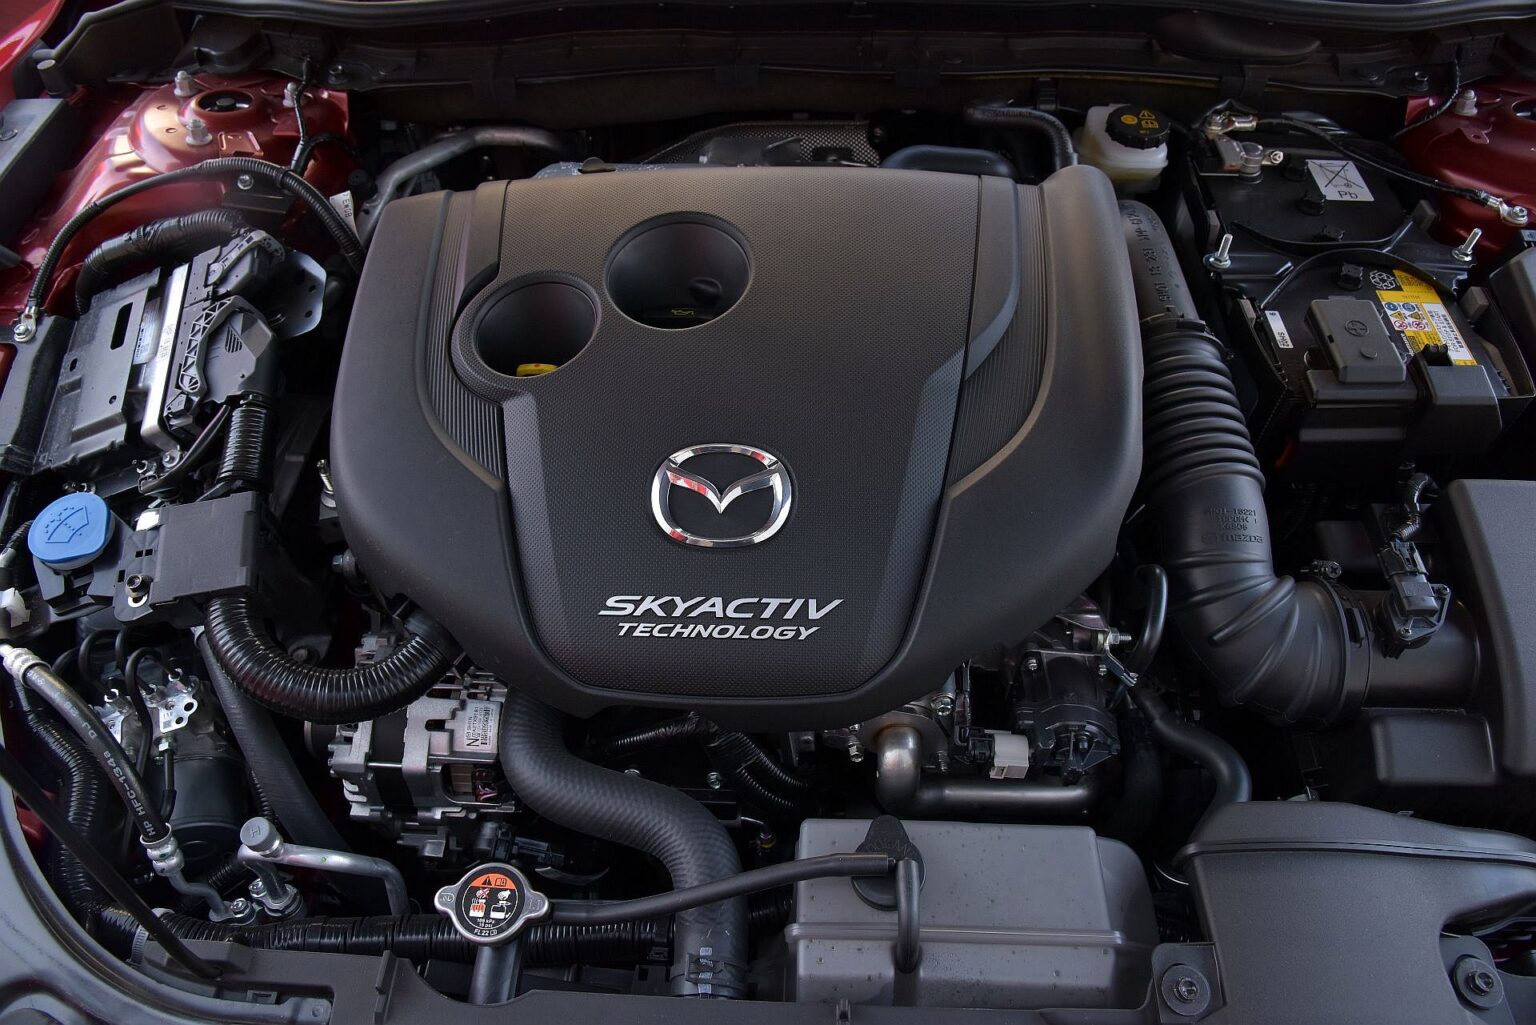 Używana Mazda 6 III (GJ/GL; od 2012 r.) opinie, dane